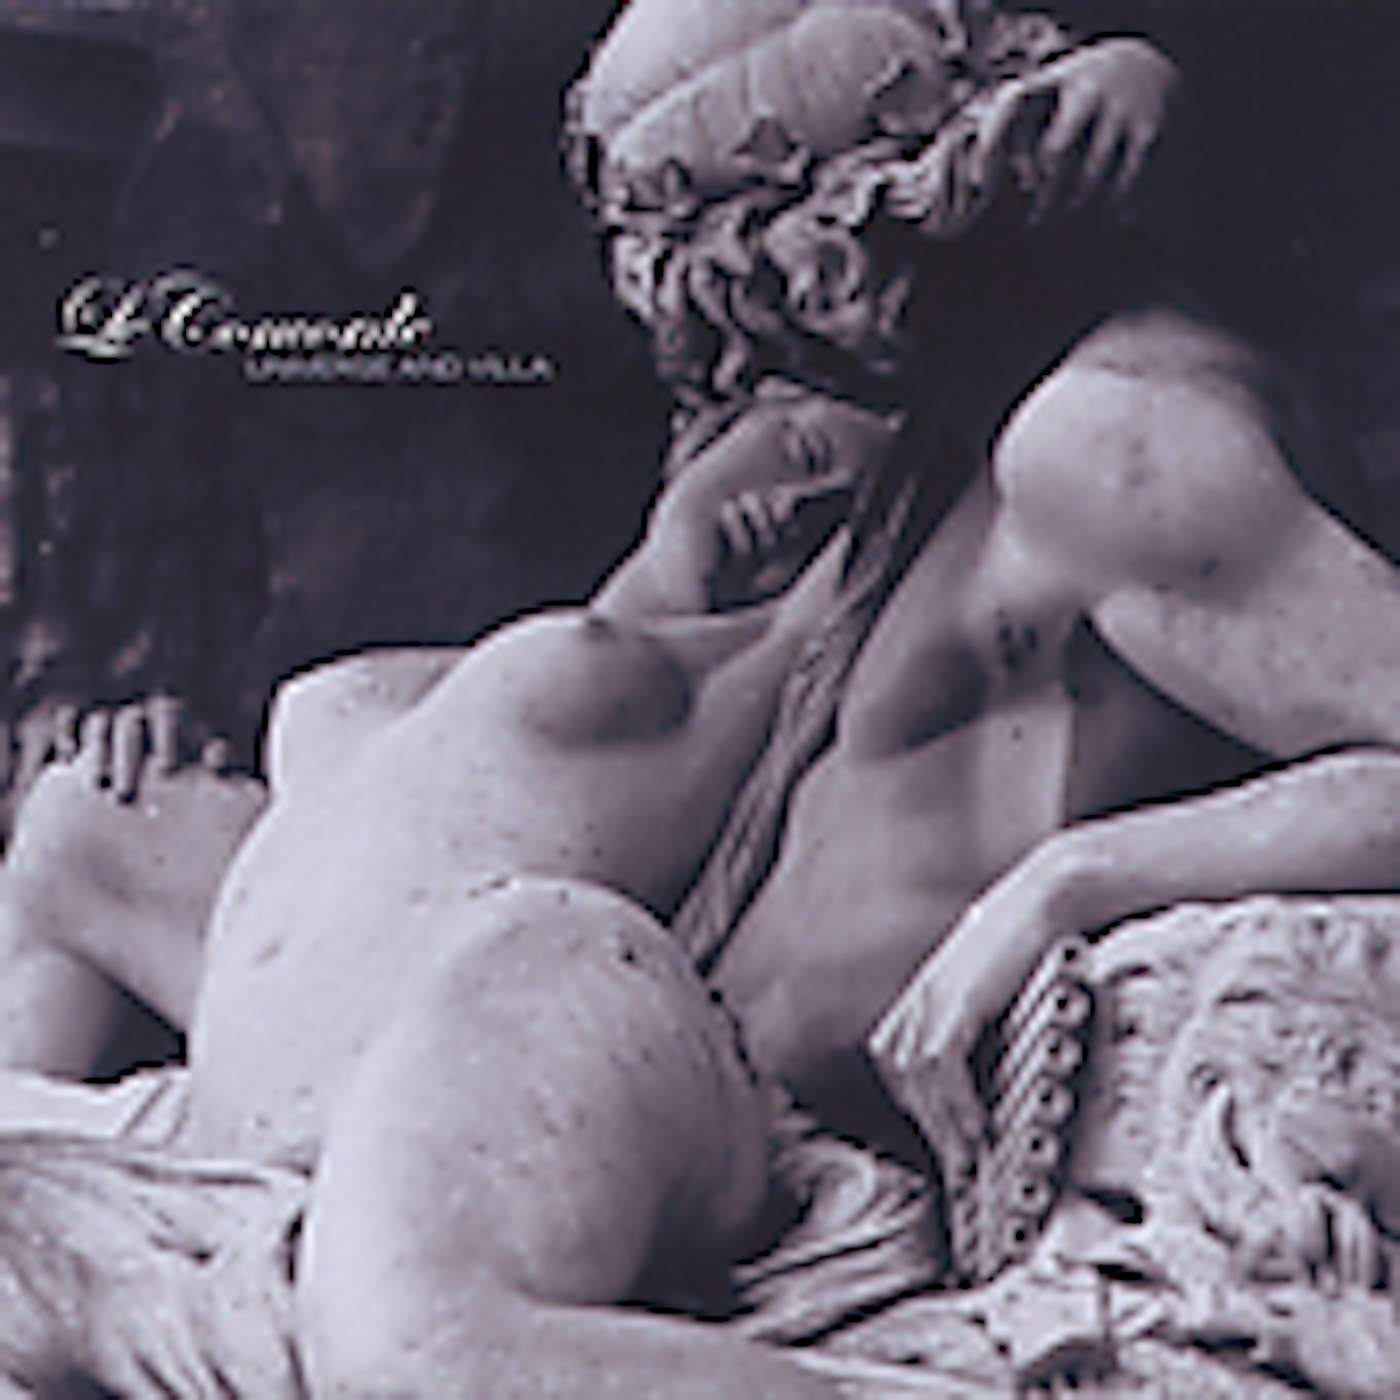 Le Concorde UNIVERSE & VILLA CD